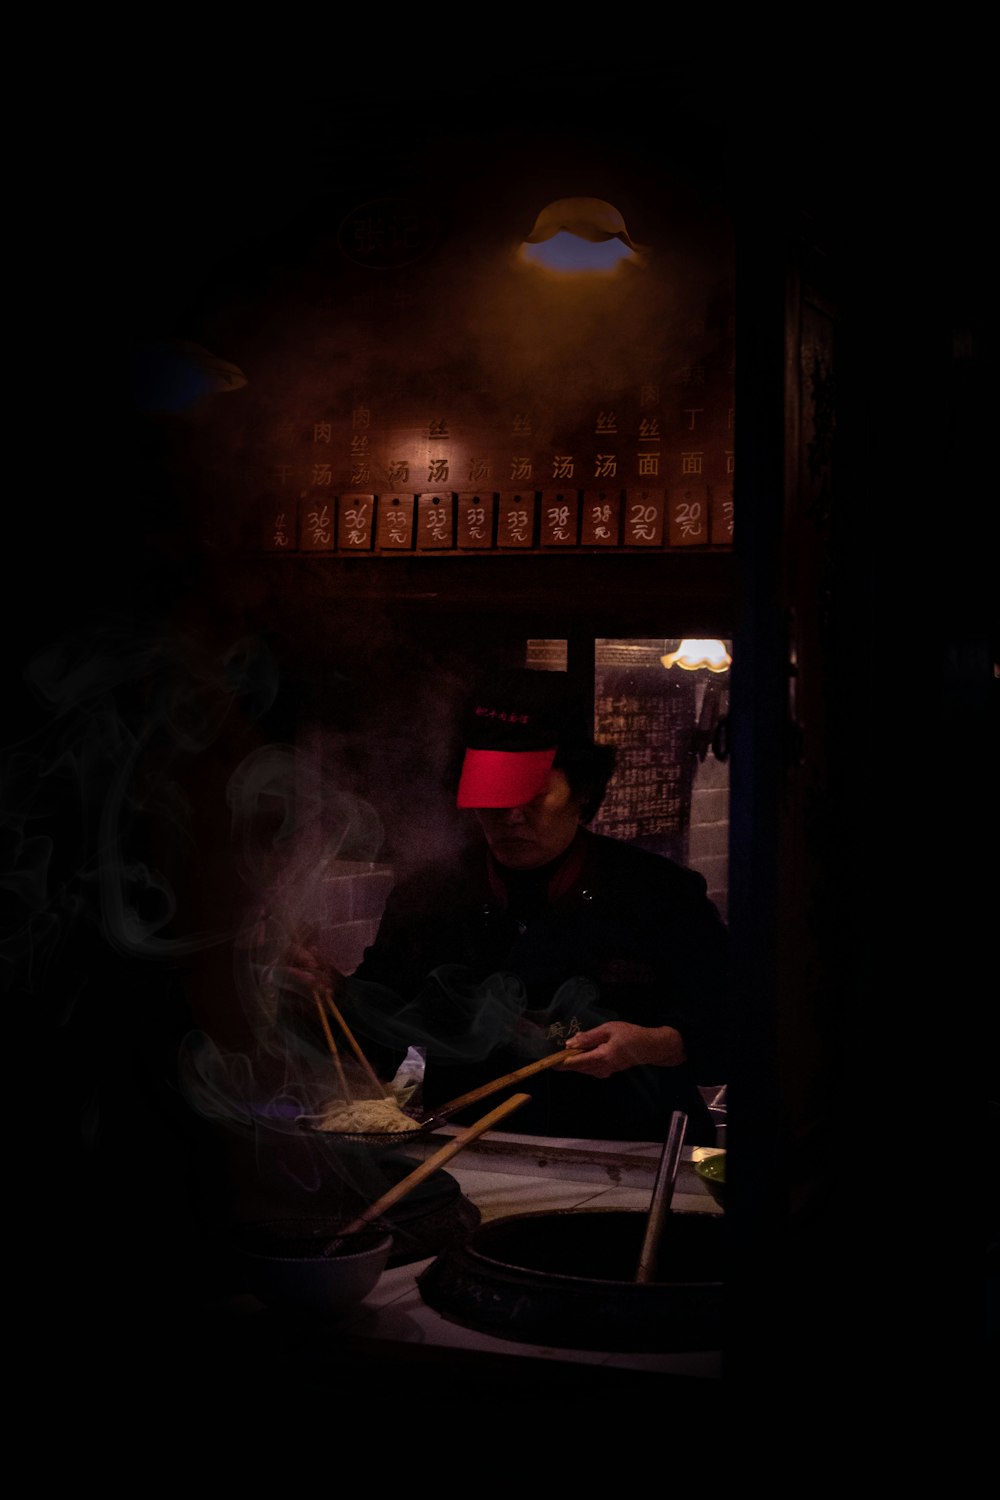 a man cooking food in a dark kitchen